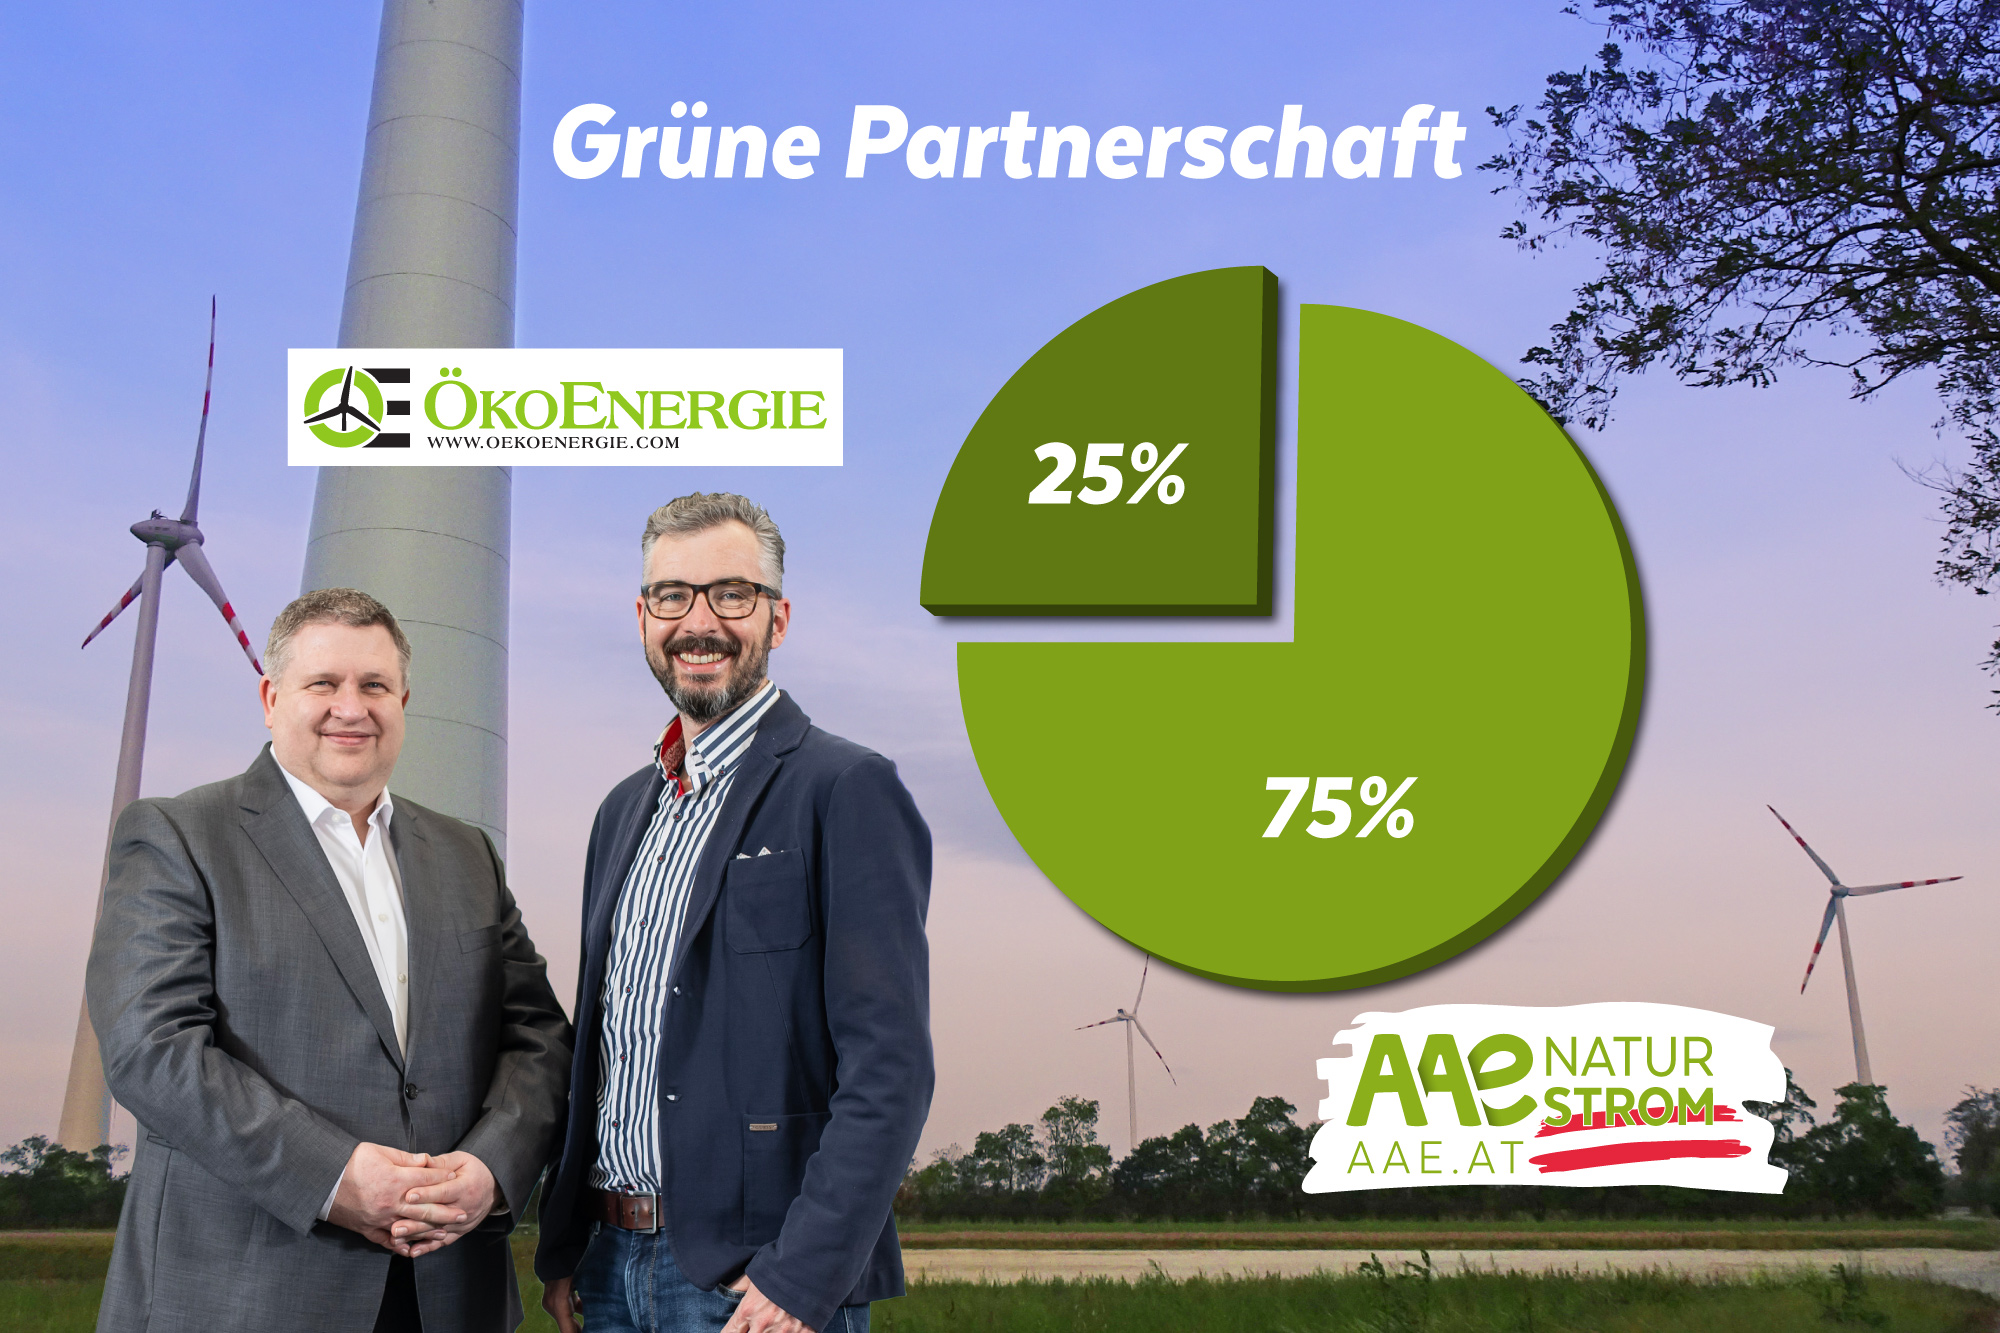 Richard Kalcikc und Wilfried Johann Klauss vor einer Grafik, die die Beteiligung von Ökoenerige (25%) und AAE Naturstrom (75%) darstellt.